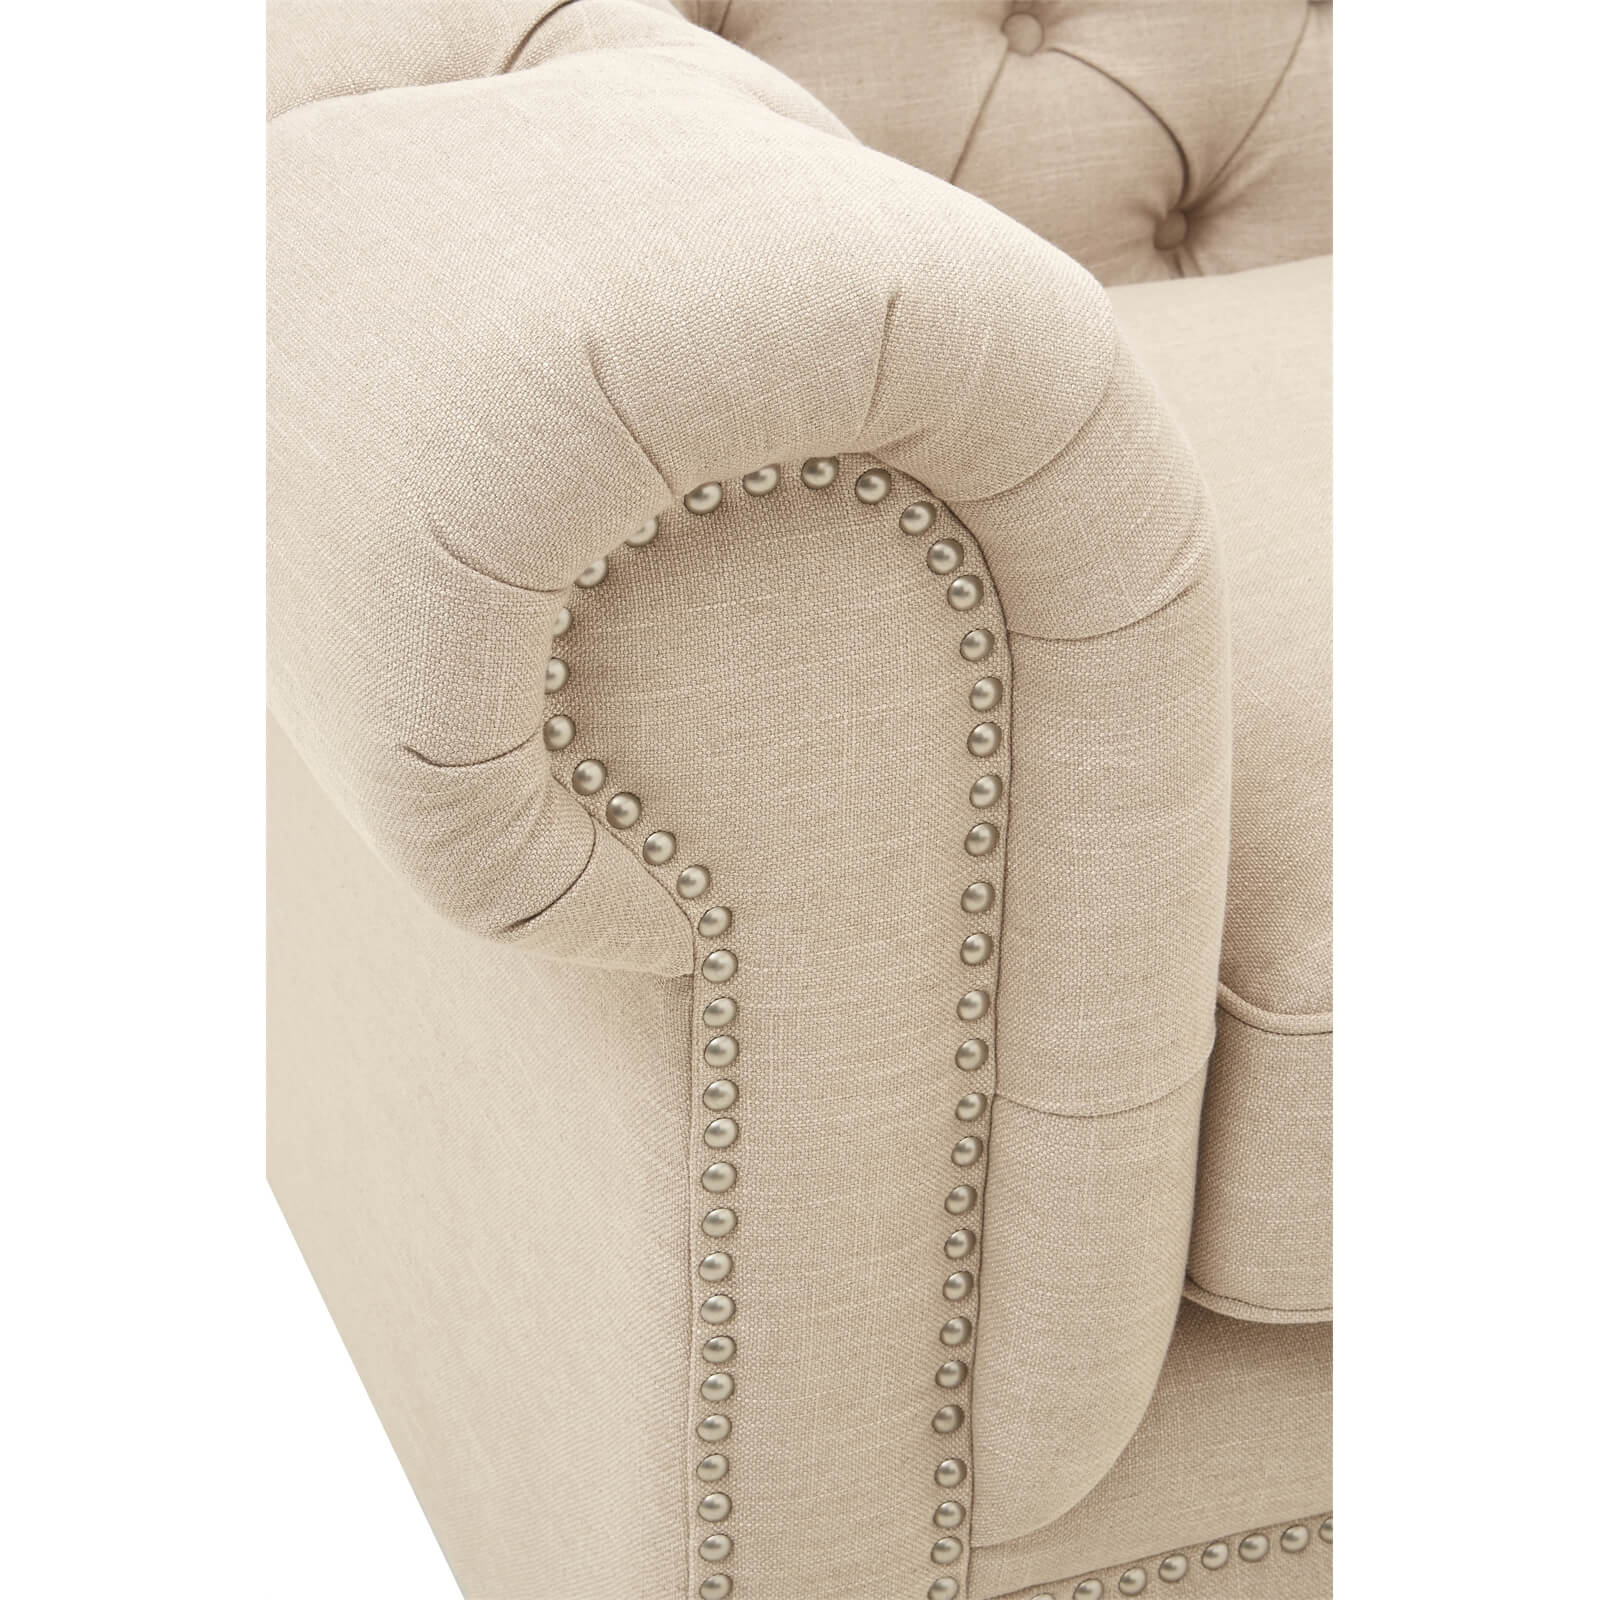 Stella 3 Seater Linen Sofa - Beige